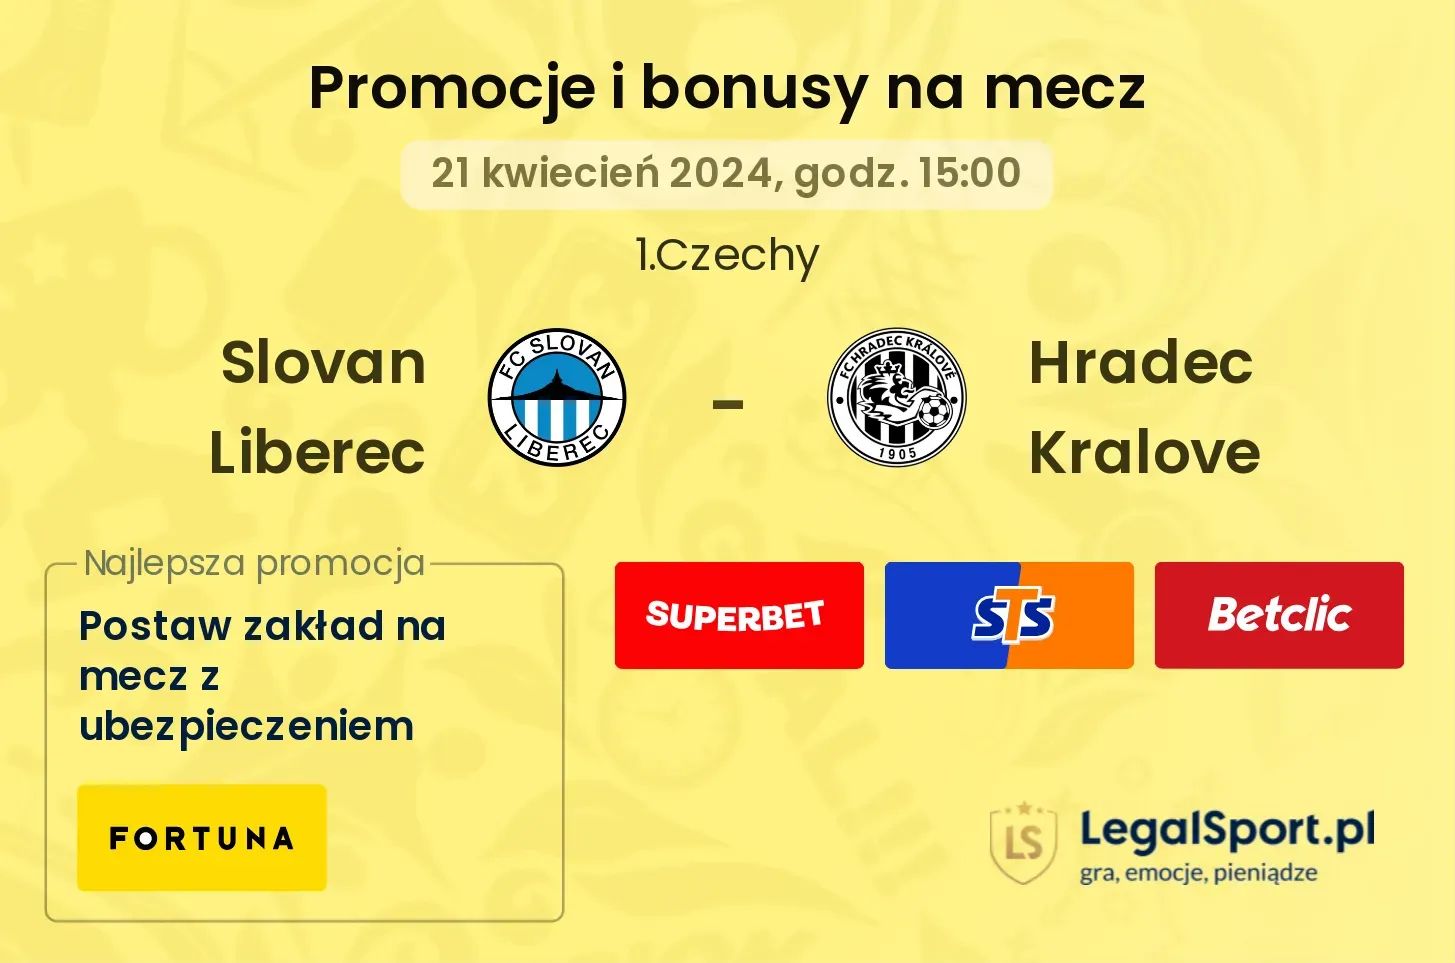 Slovan Liberec - Hradec Kralove promocje bonusy na mecz